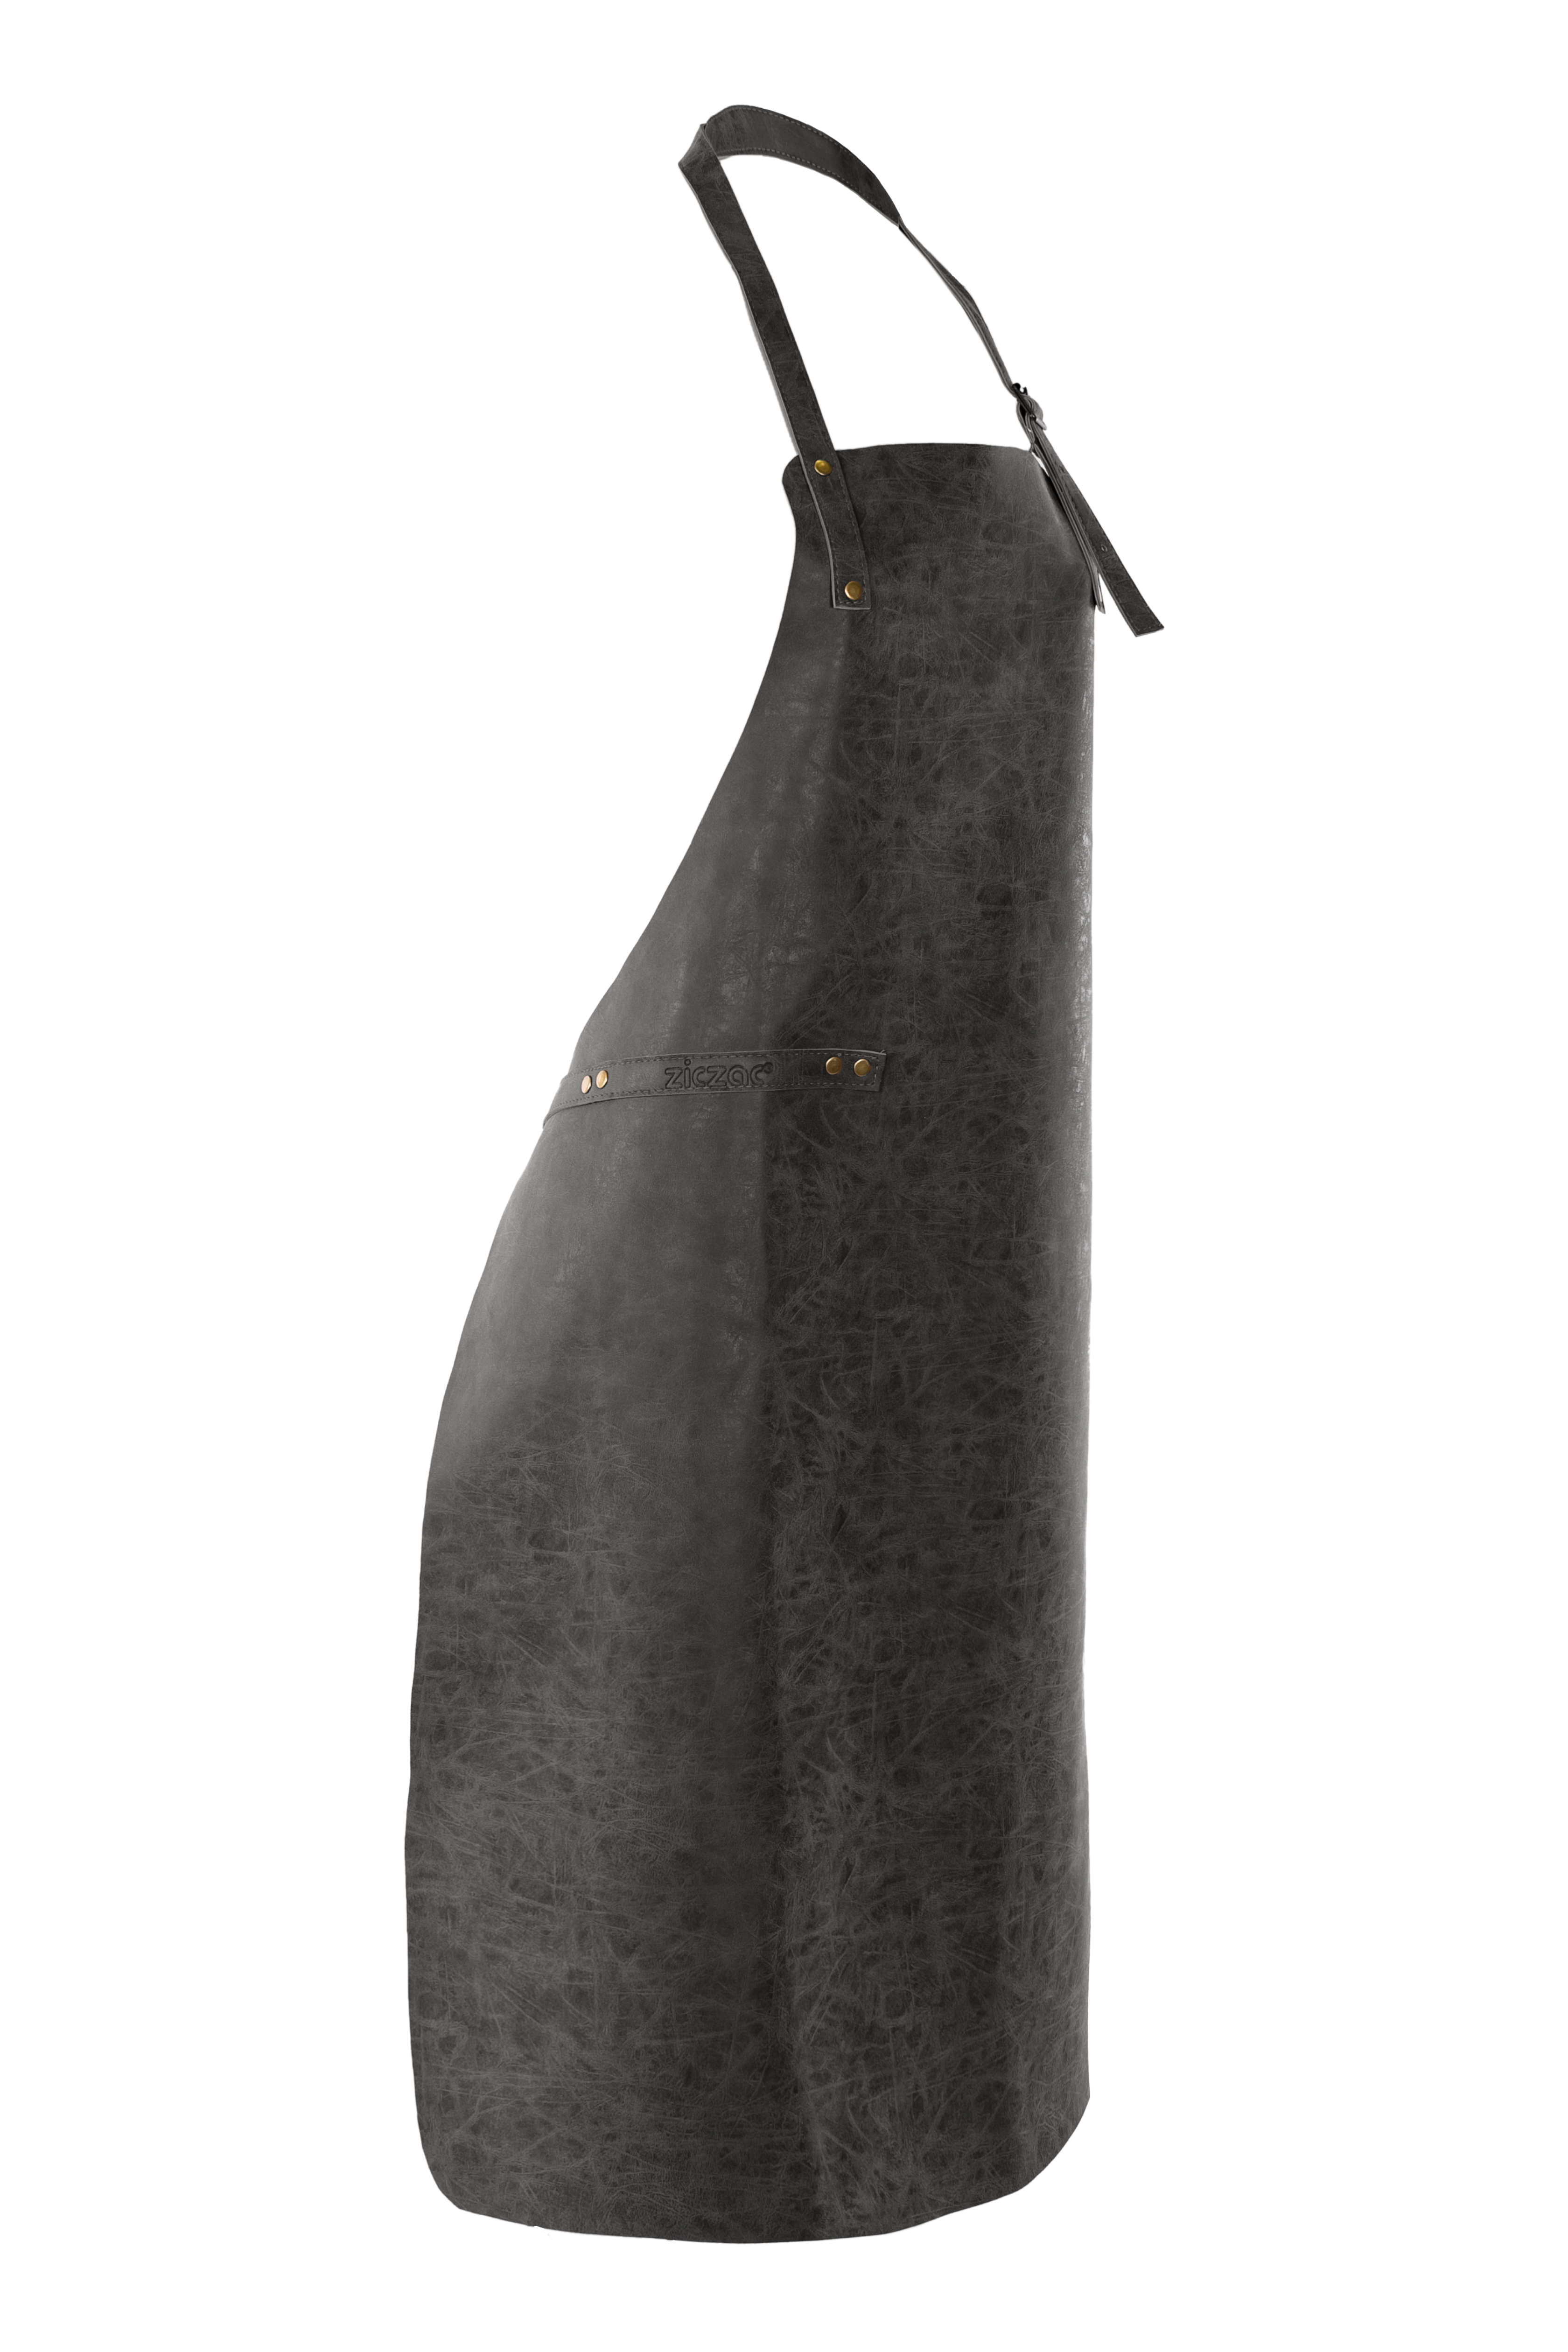 Tablier TRUMAN (Towel loop - no pocket - opt. Accessory bag), 70x90 cm, black